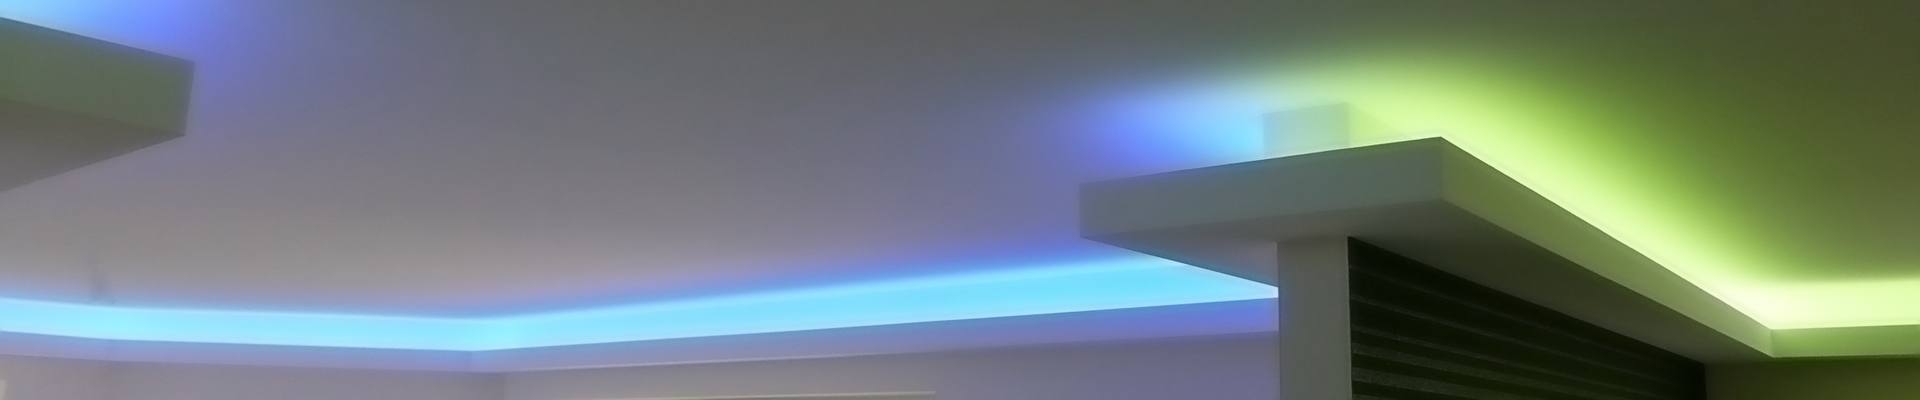 Aufbau-Anleitung für eine indirekten Beleuchtung mit LED